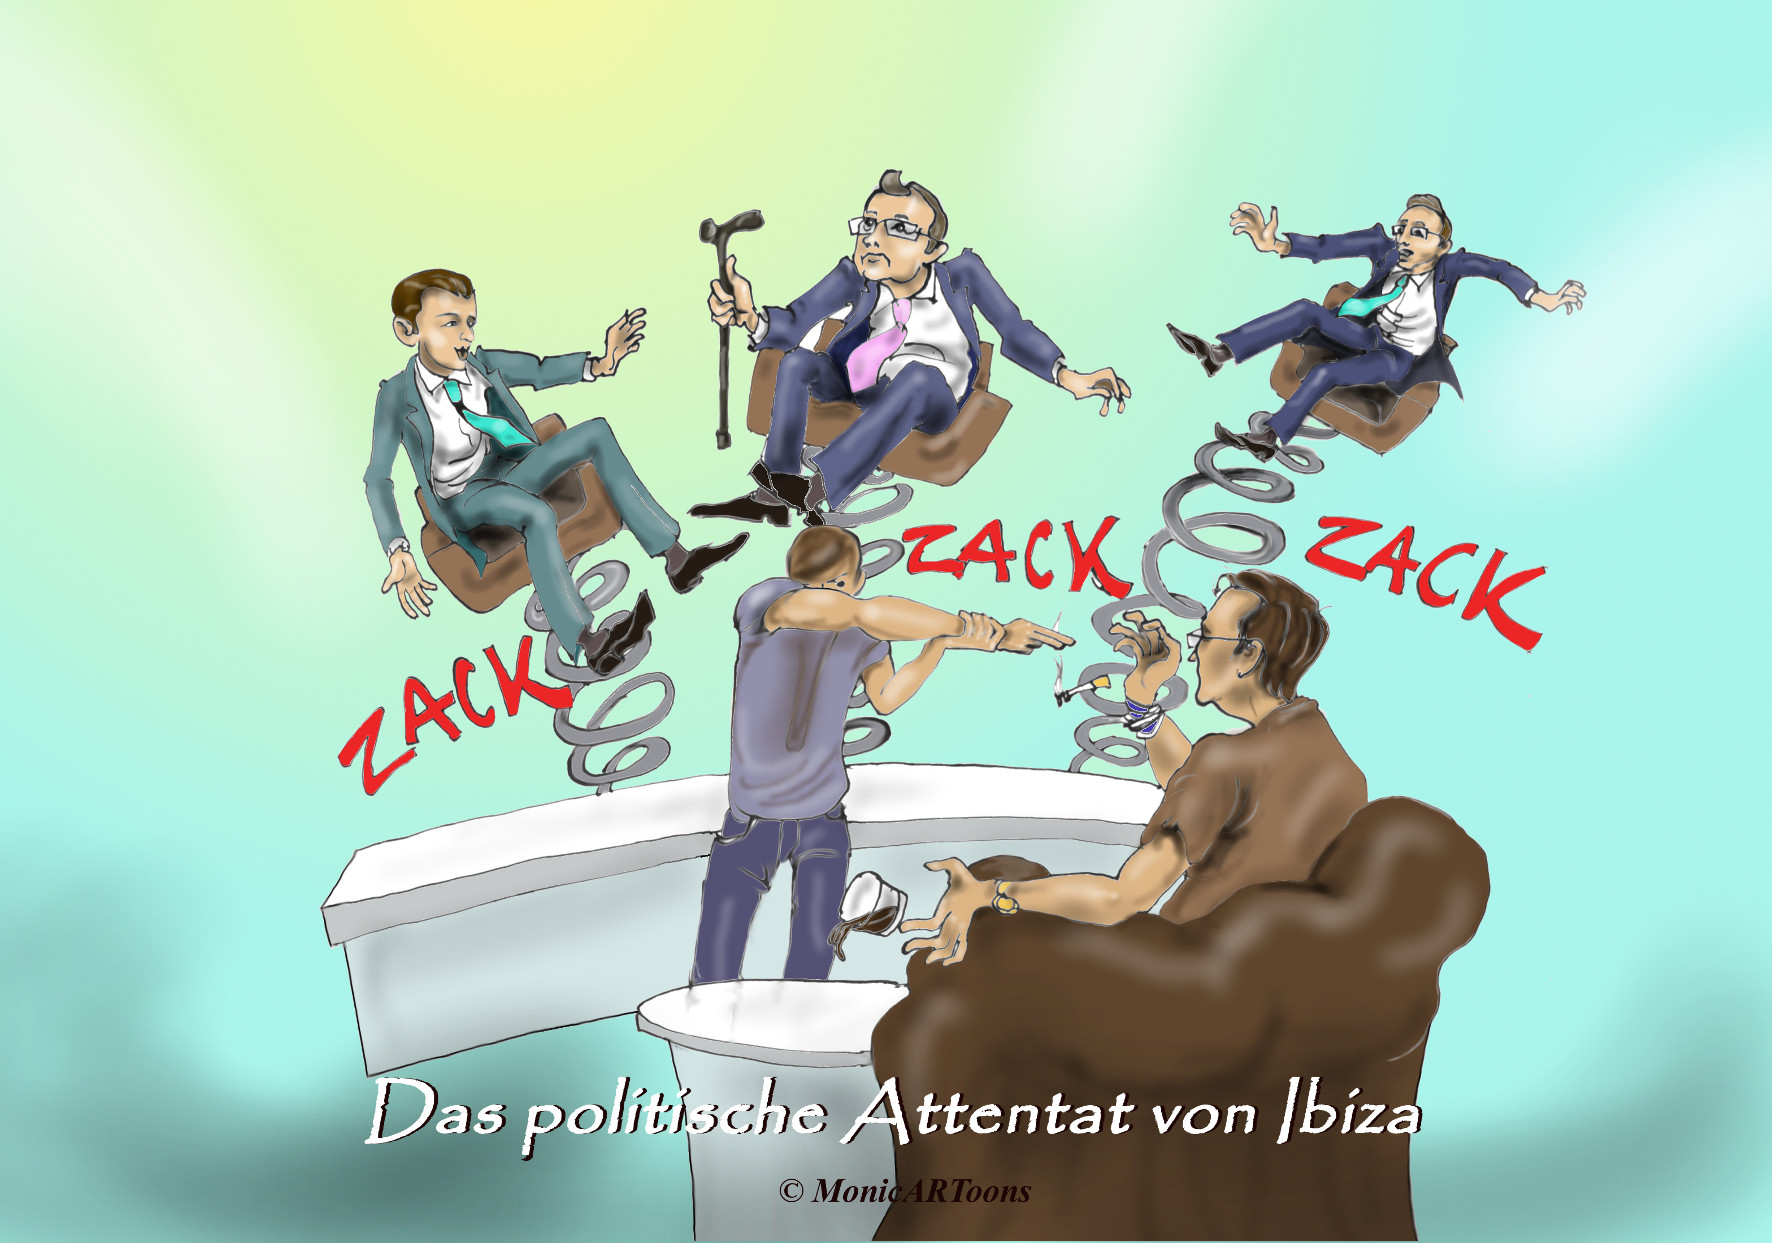 Zack-Zack-Zack